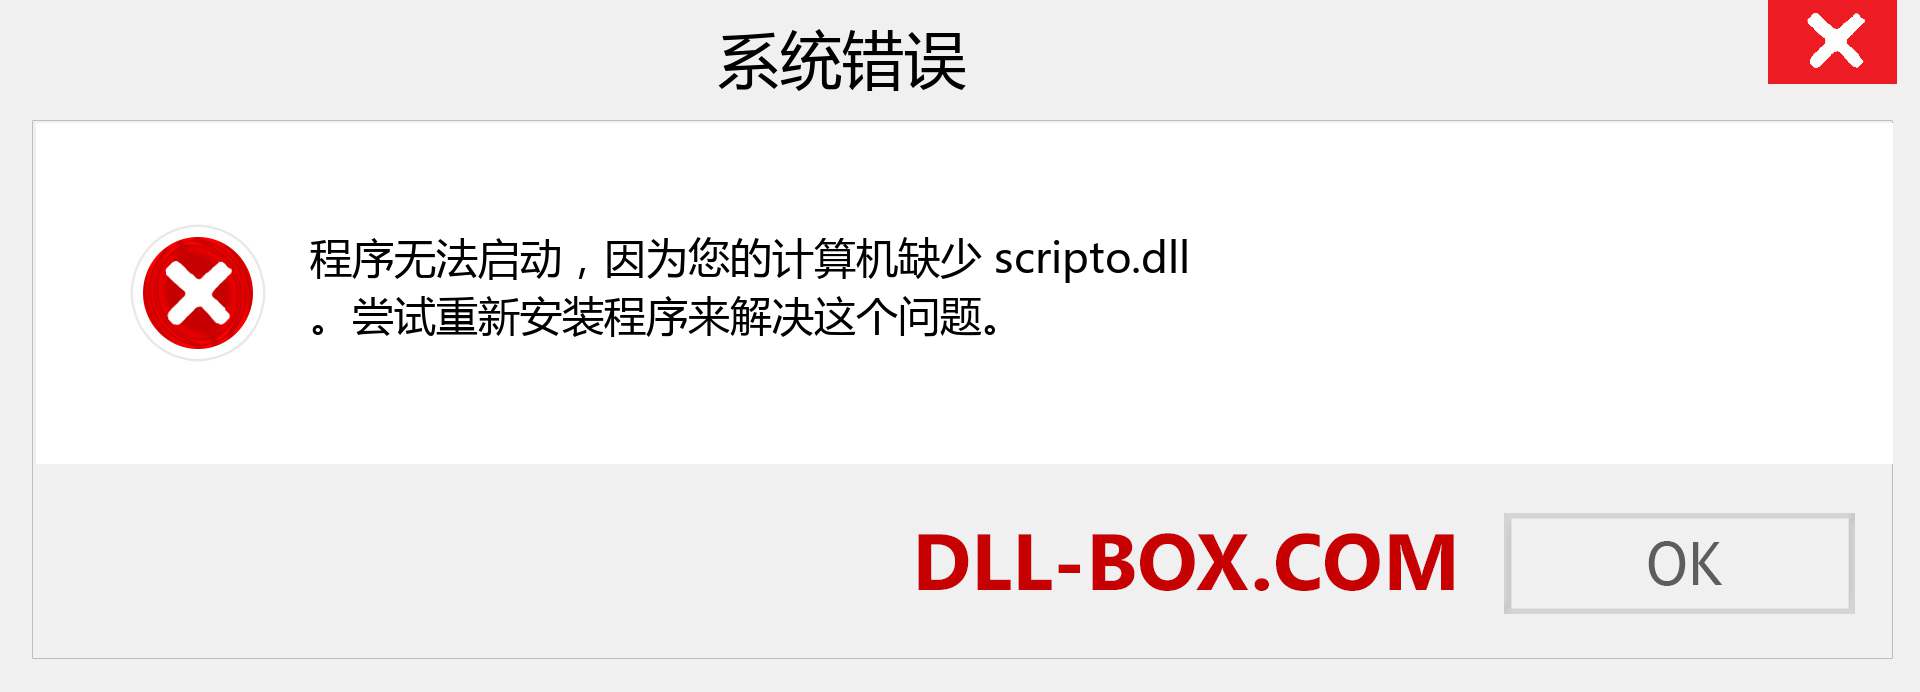 scripto.dll 文件丢失？。 适用于 Windows 7、8、10 的下载 - 修复 Windows、照片、图像上的 scripto dll 丢失错误